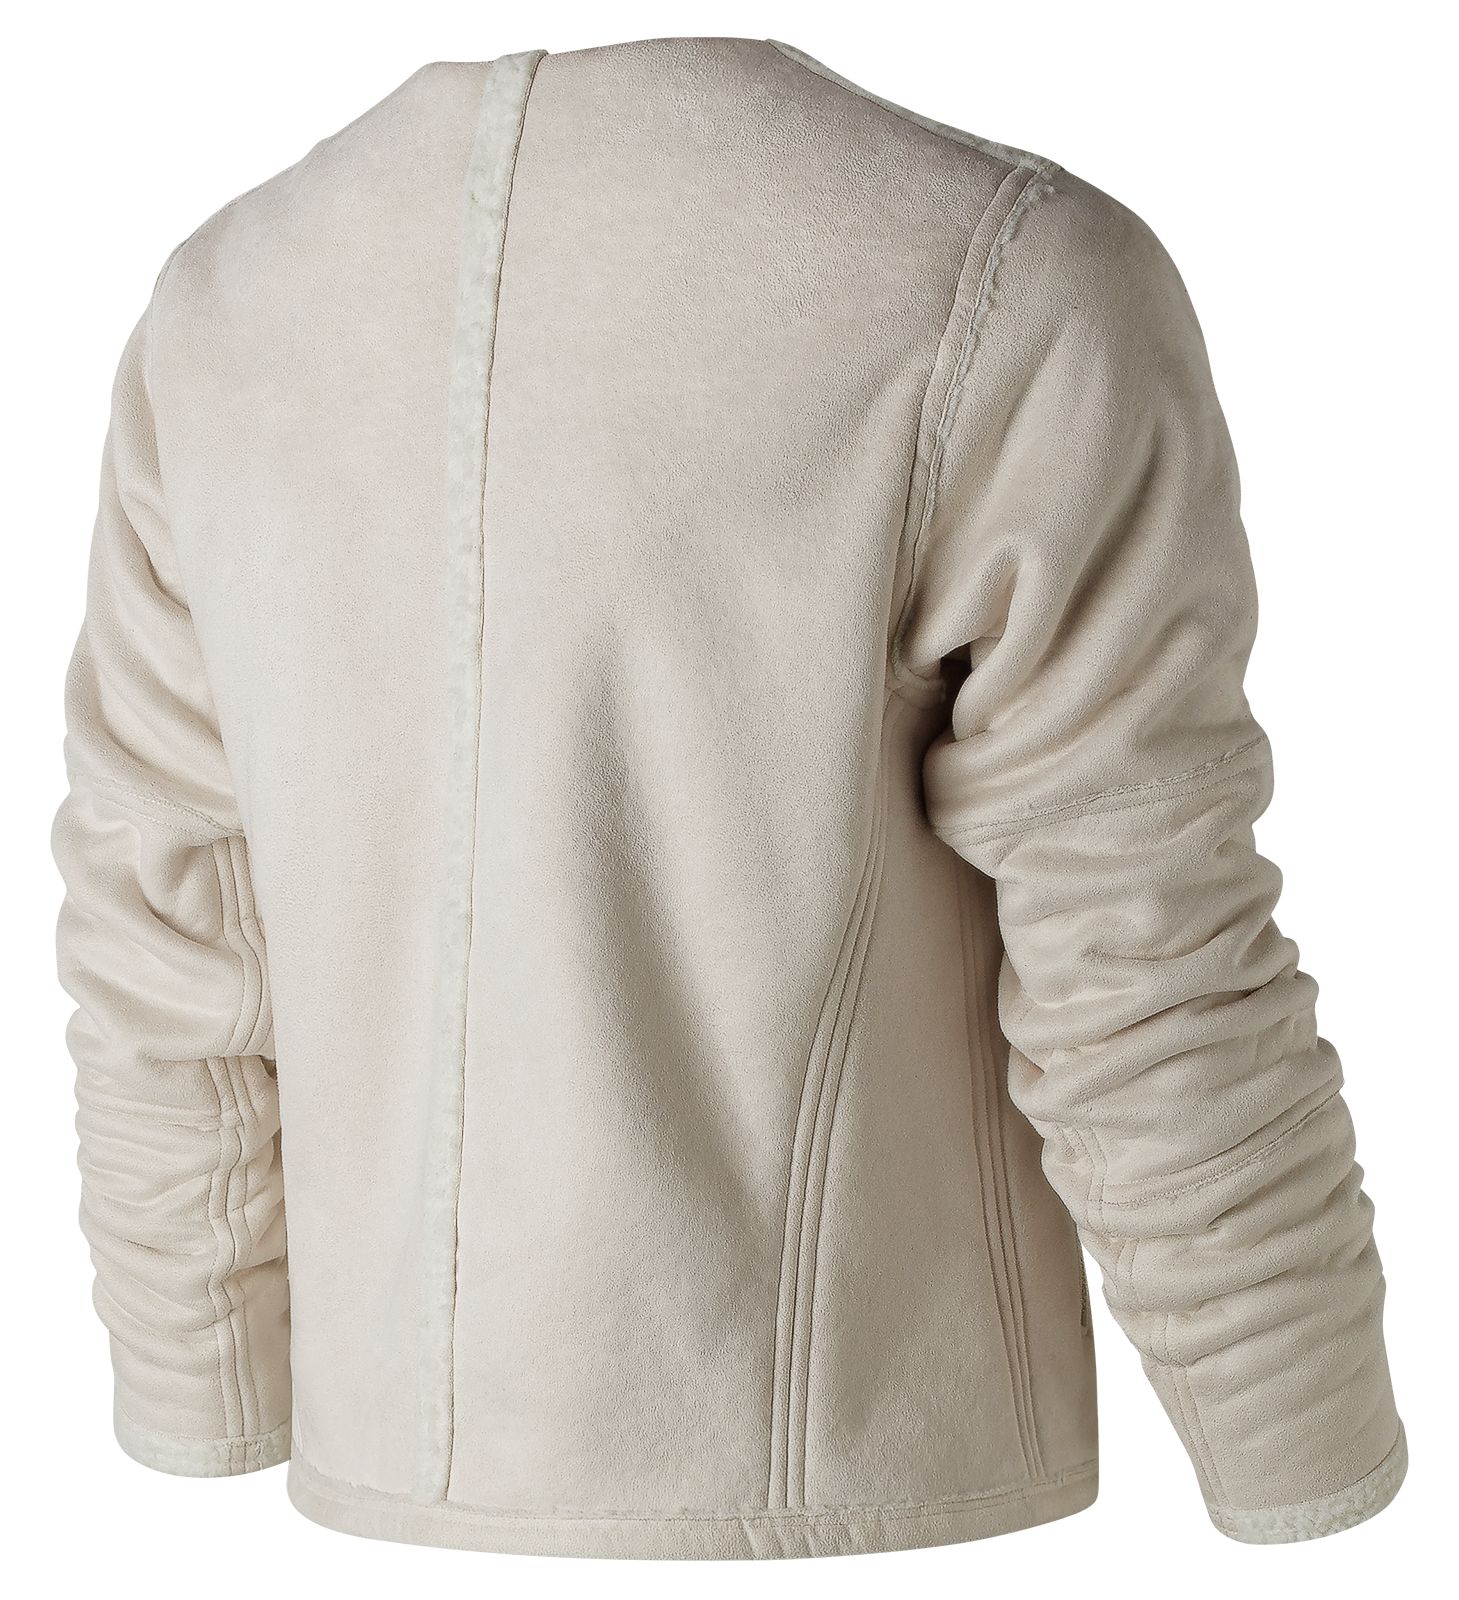 new balance revitalize jacket